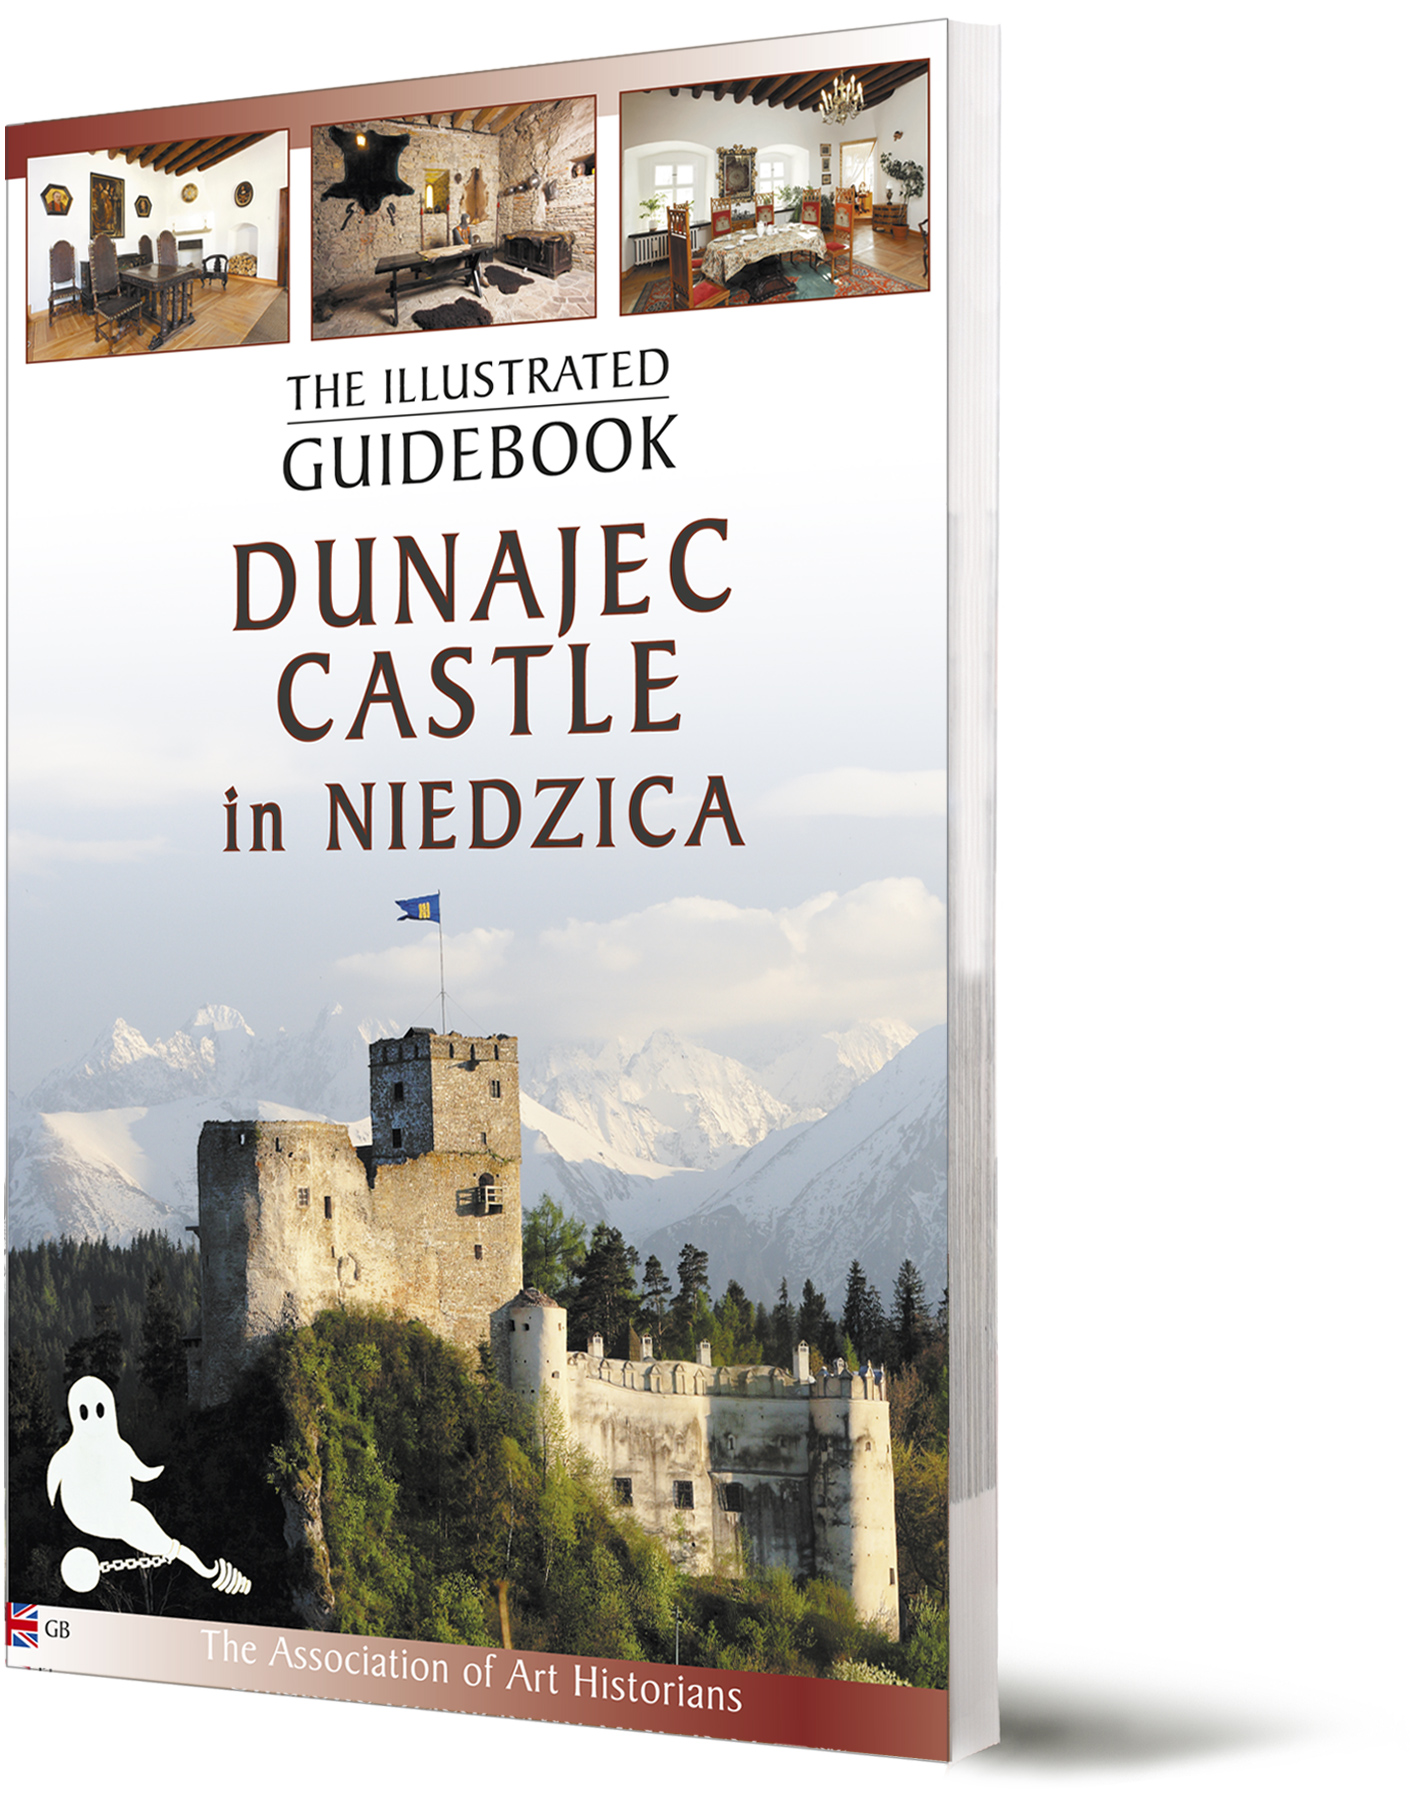 Niedzica Dunajec Castle illustrated guidebook cover